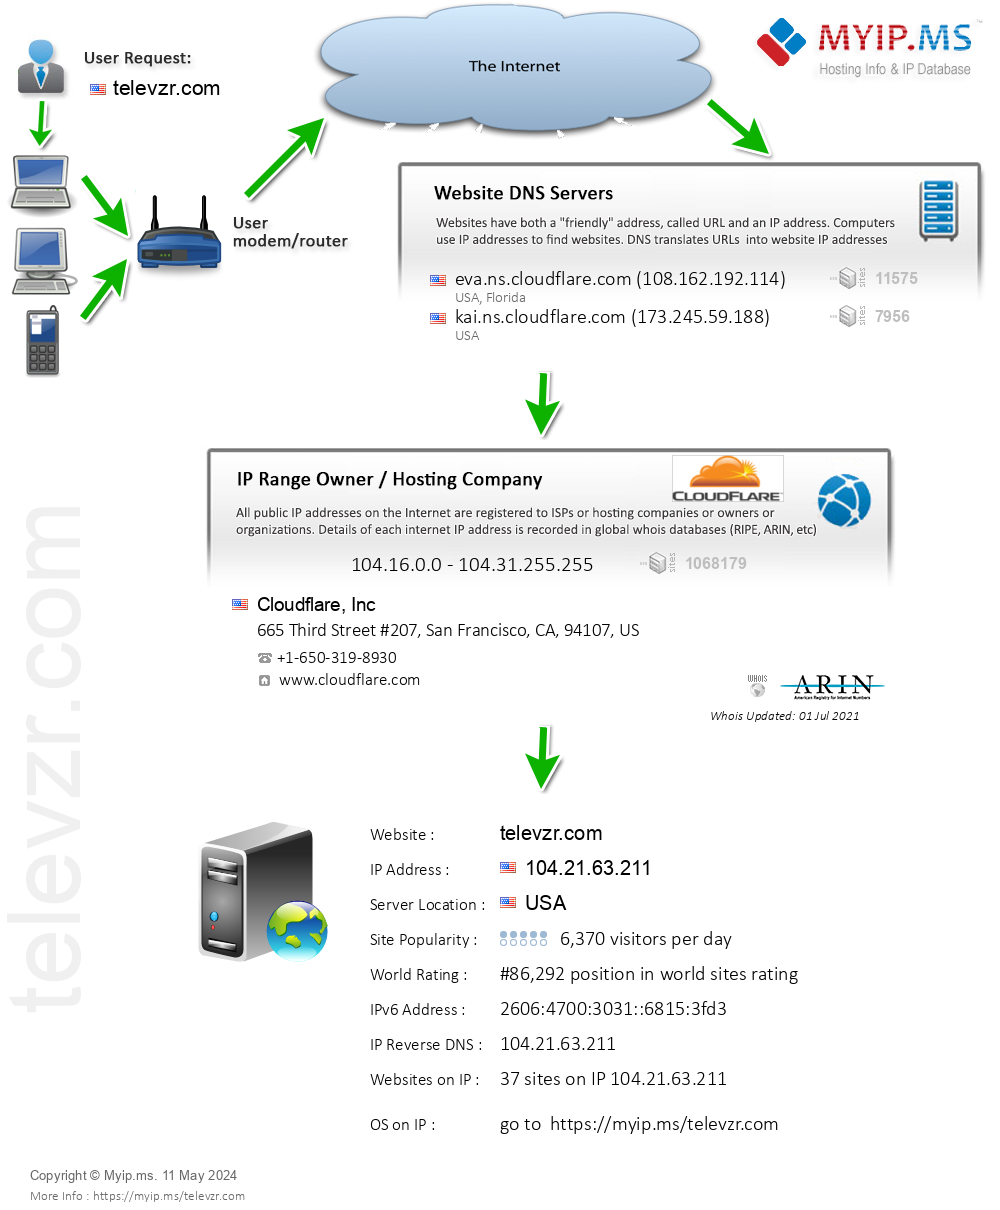 Televzr.com - Website Hosting Visual IP Diagram